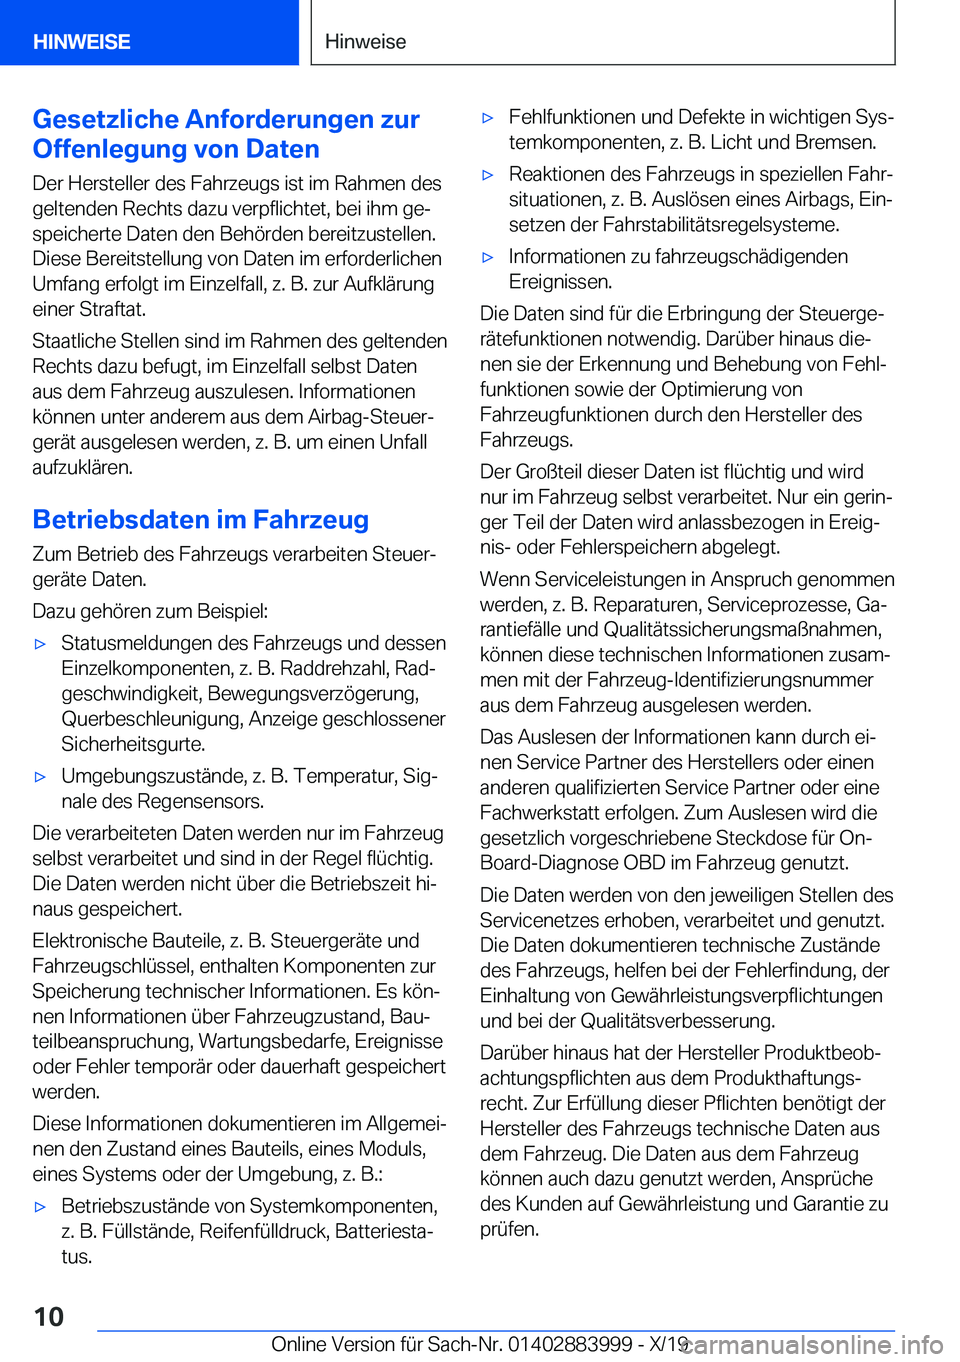 BMW X7 2020  Betriebsanleitungen (in German) �G�e�s�e�t�z�l�i�c�h�e��A�n�f�o�r�d�e�r�u�n�g�e�n��z�u�r
�O�f�f�e�n�l�e�g�u�n�g��v�o�n��D�a�t�e�n
�D�e�r��H�e�r�s�t�e�l�l�e�r��d�e�s��F�a�h�r�z�e�u�g�s��i�s�t��i�m��R�a�h�m�e�n��d�e�s
�g�e�